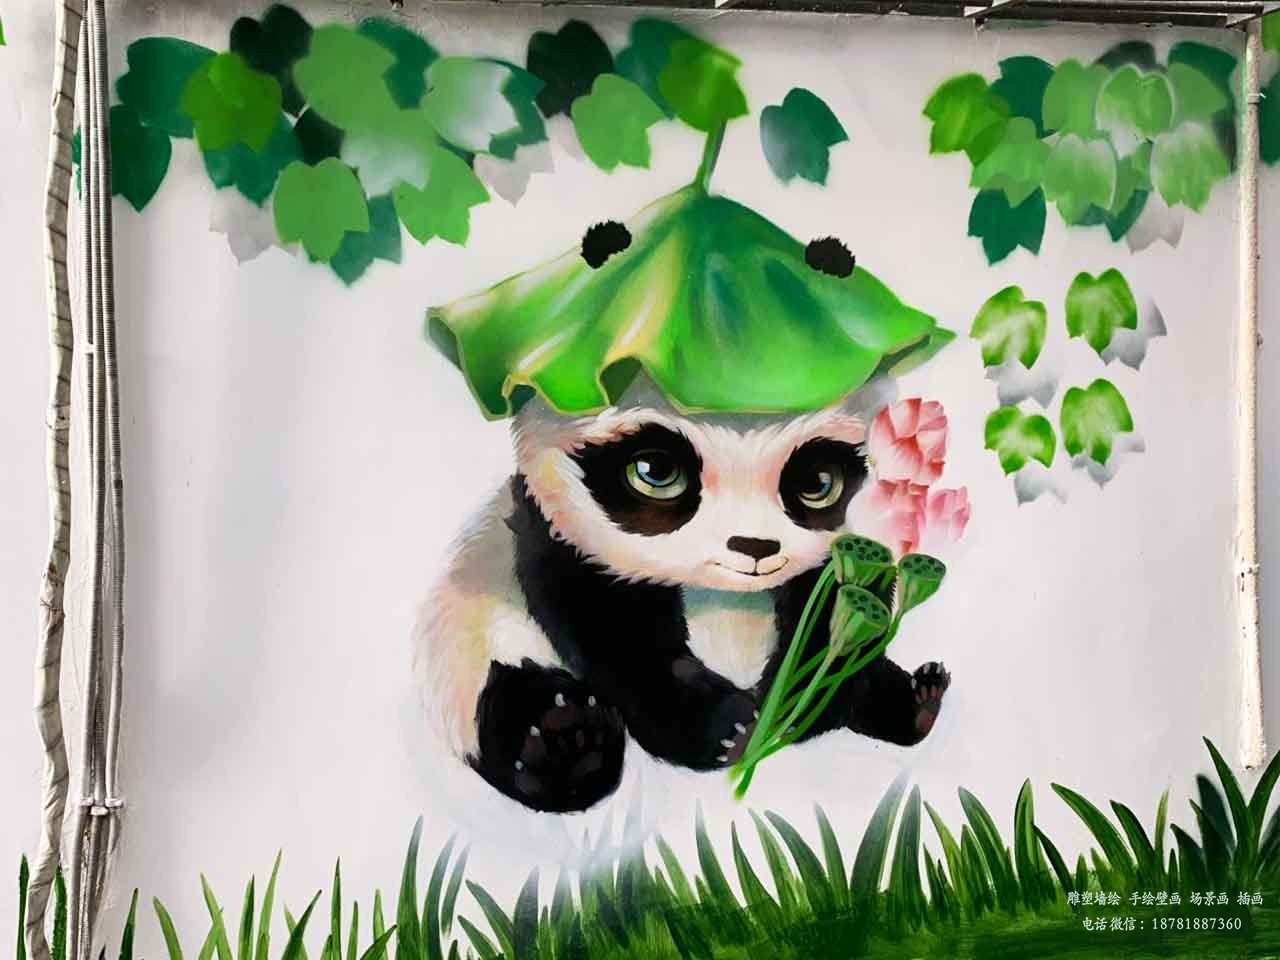 市政社区文化墙卡通熊猫3D画立体墙绘壁画手绘成都澜泉文化